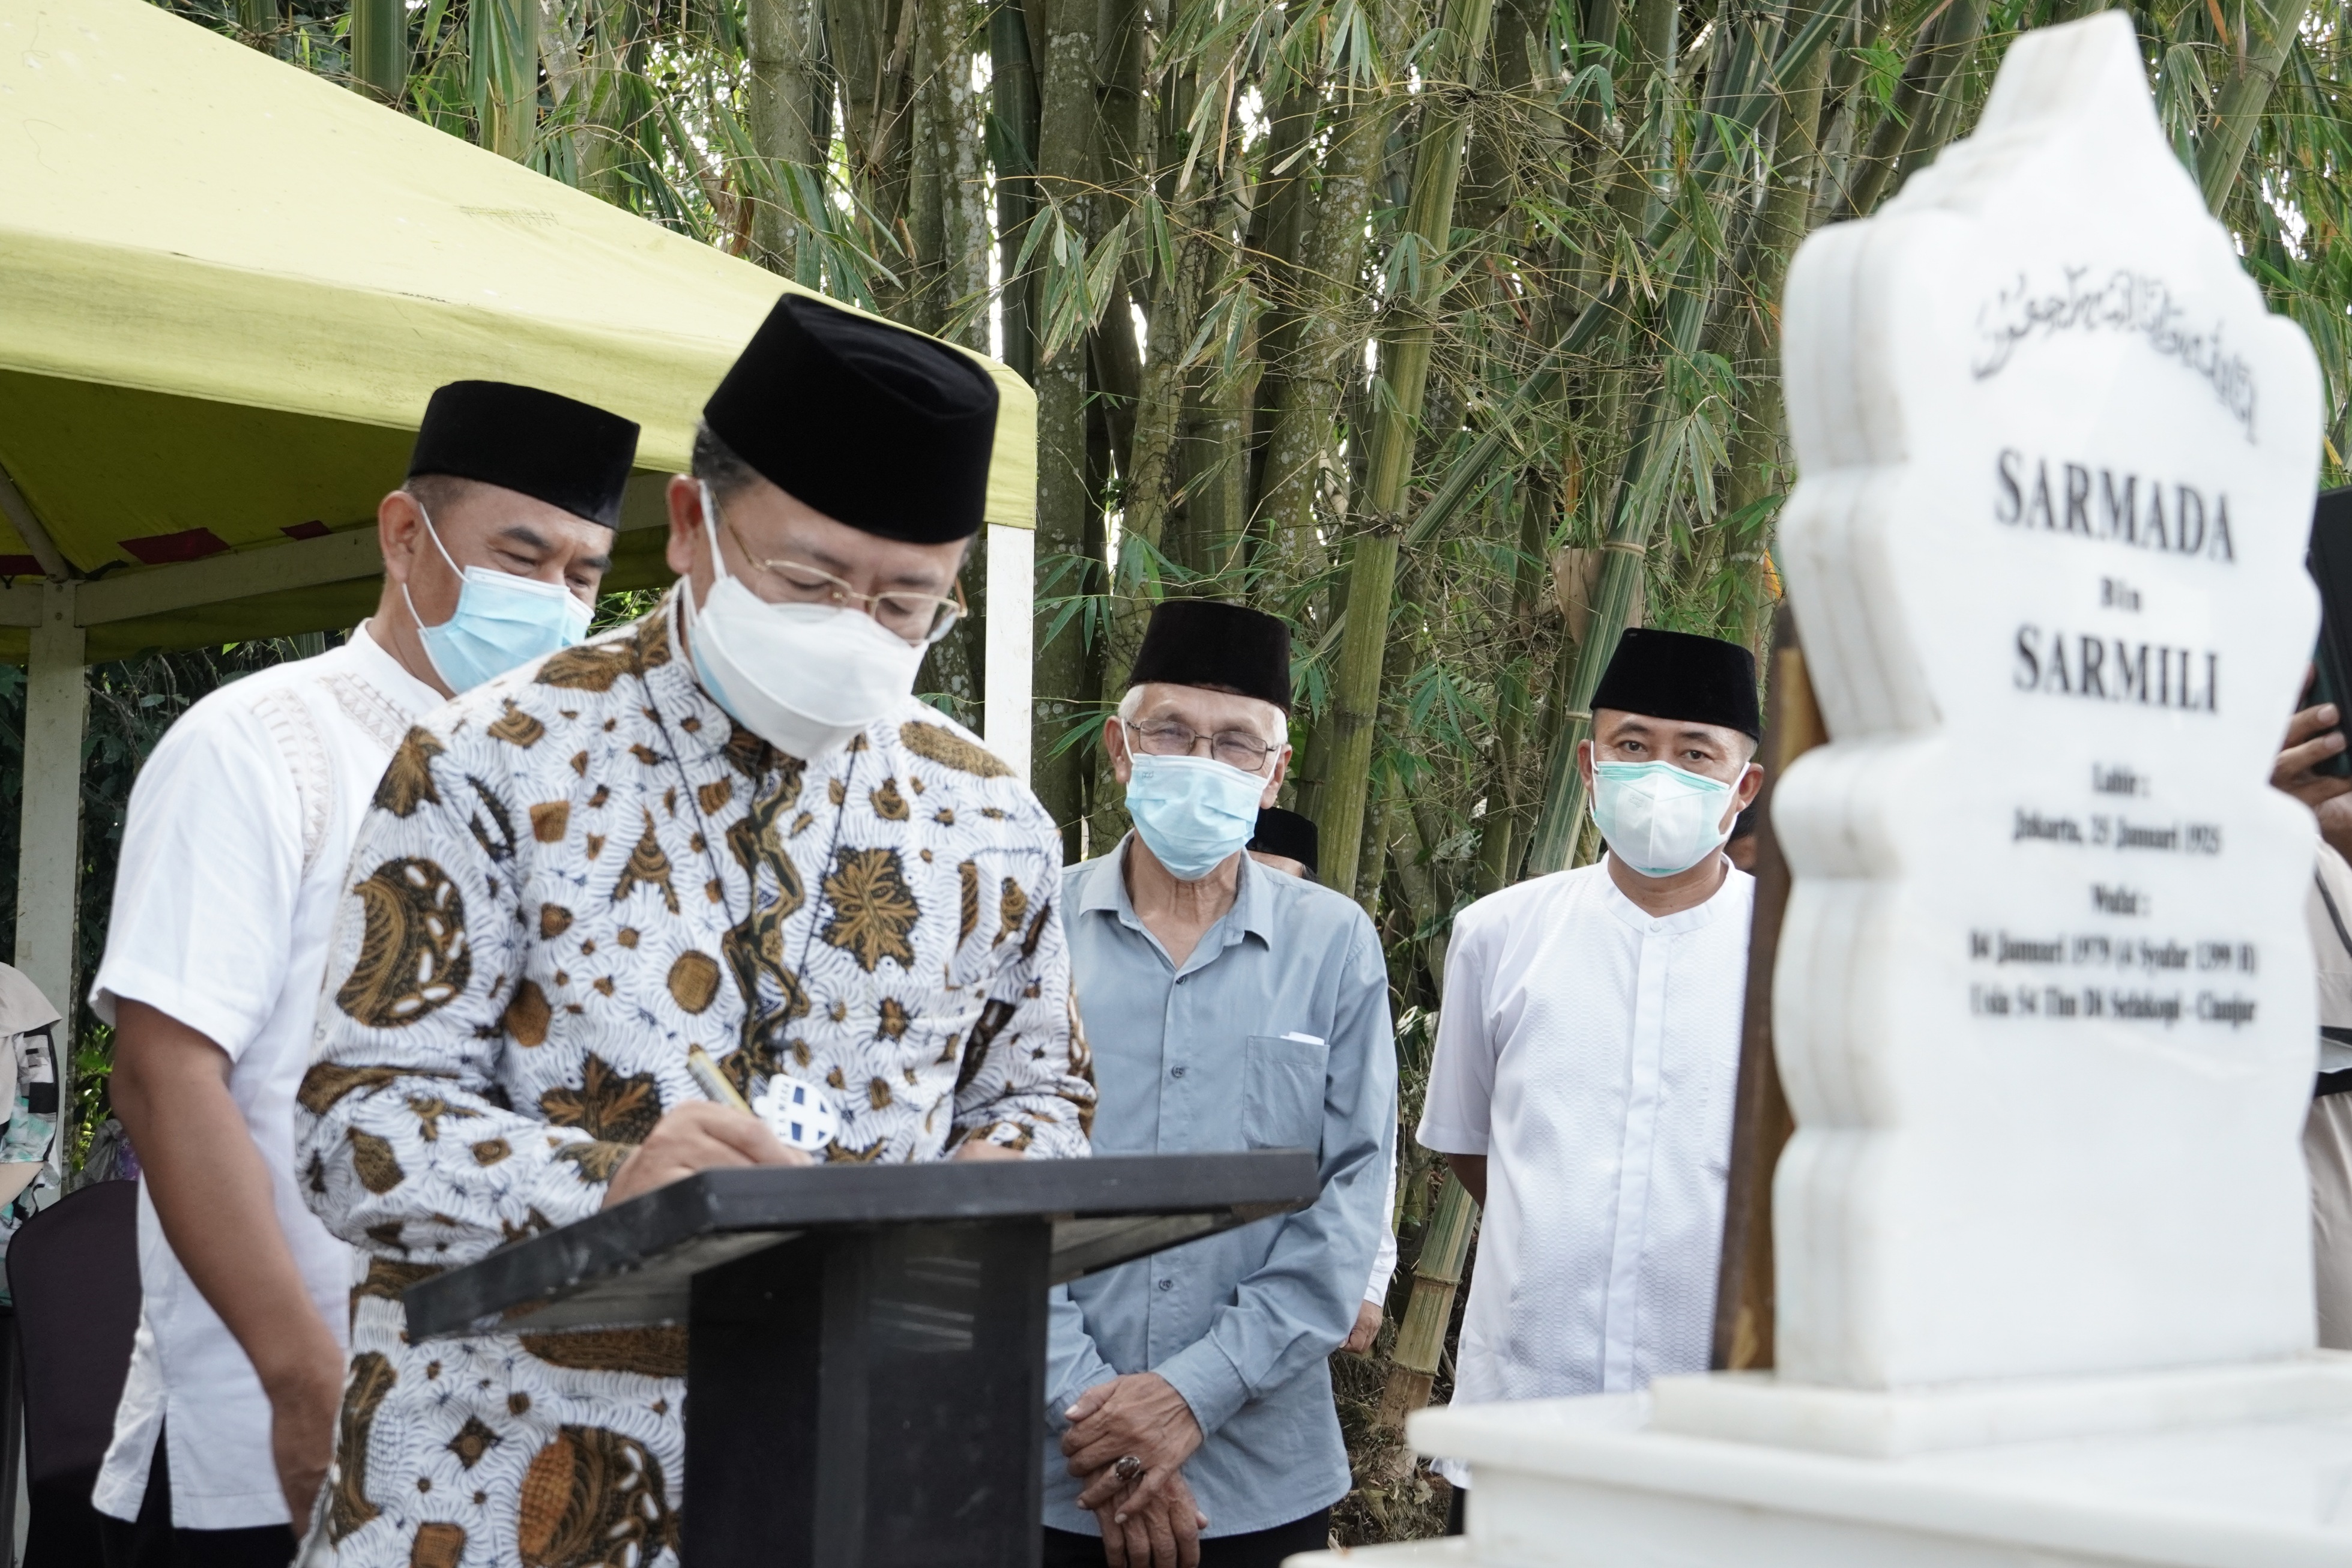  Hari Jadi Cianjur 344, Bupati Resmikan Pemugaran Makam Letkol Sarmada